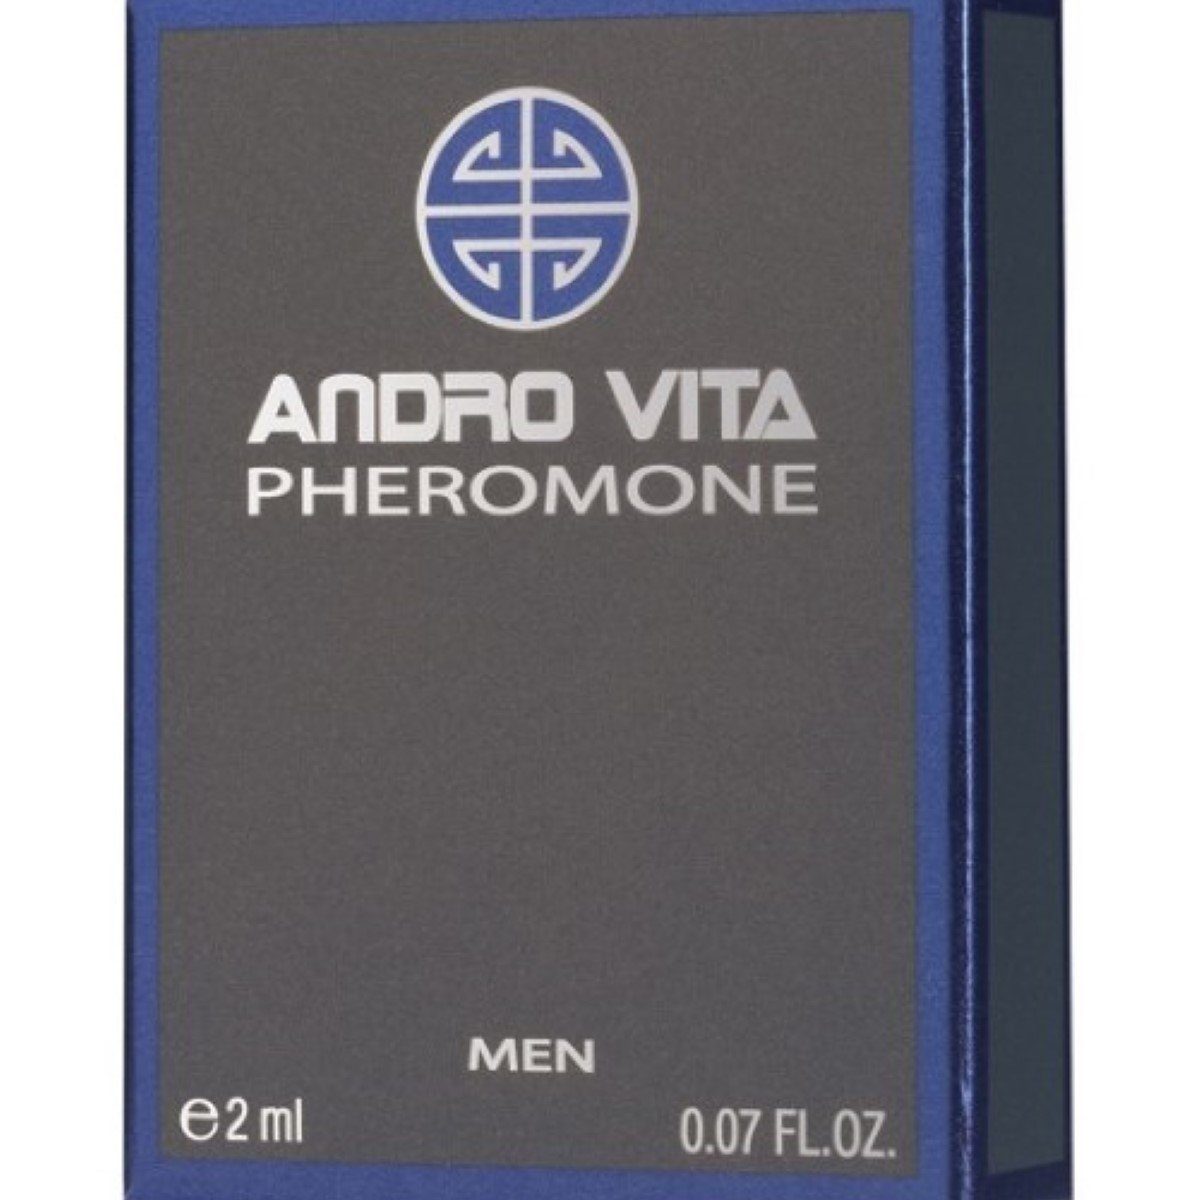 Andro Vita Extrait Parfum 2 ml - Pheromone ANDRO VITA Men Parfum 2ml